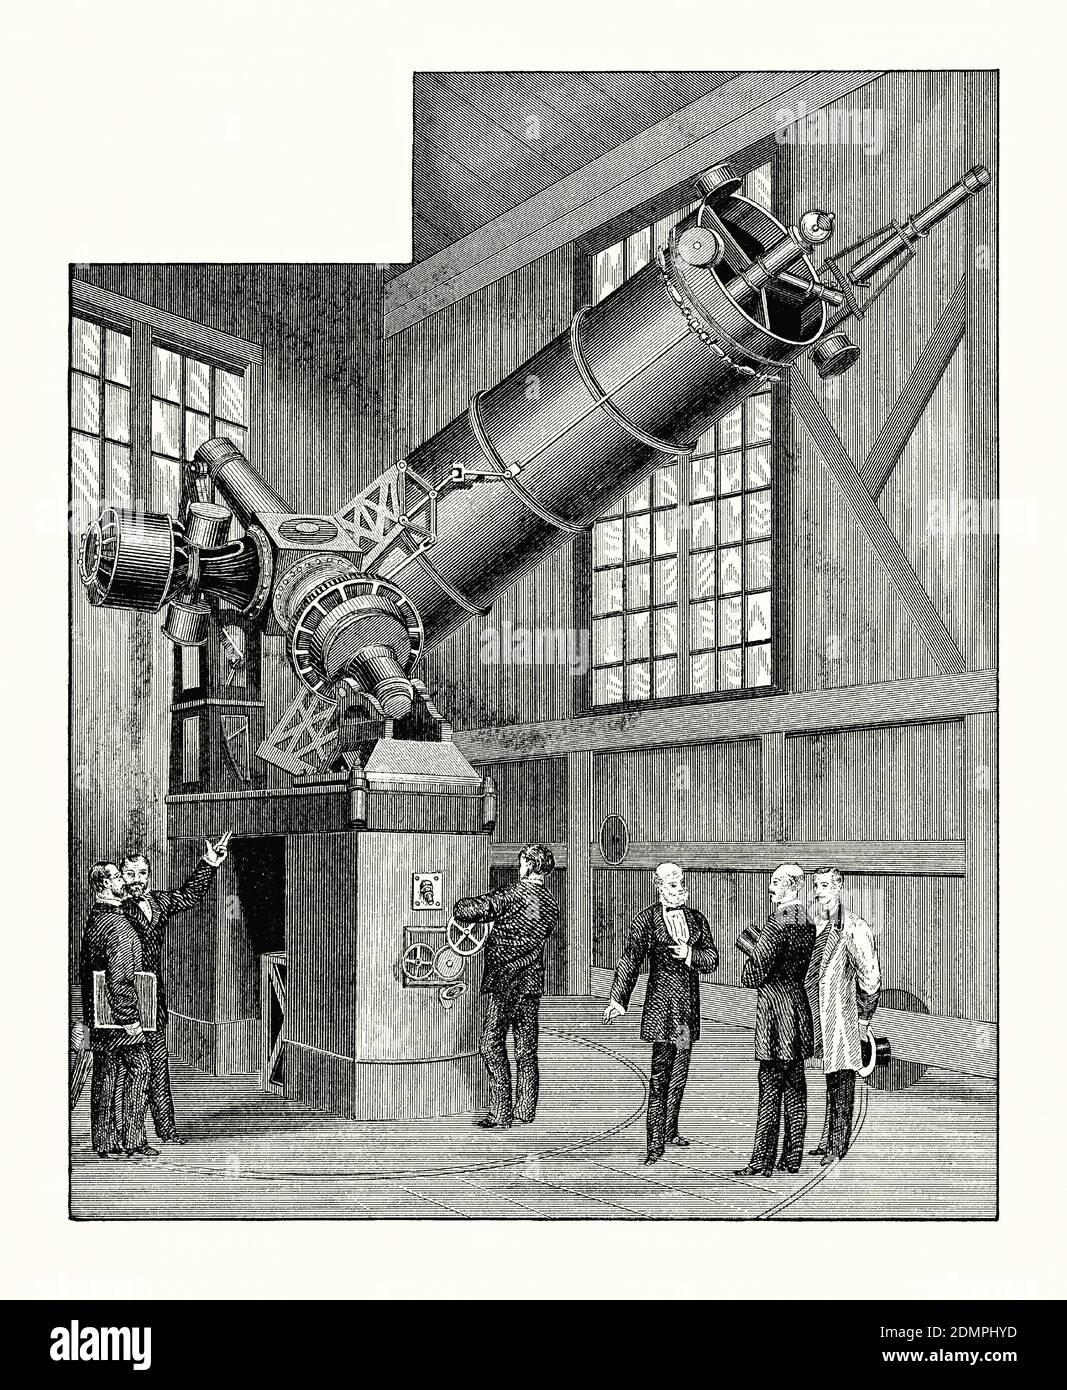 Une vieille gravure montrant des observateurs au "Grand télescope réfléchissant" de Paris, France c.1880. Il est tiré d'un livre victorien des années 1880. Un télescope réfléchissant (réflecteur) est un télescope qui utilise un seul ou une combinaison de miroirs incurvés qui réfléchissent la lumière et forment une image. Le télescope réfléchissant a été inventé par Isaac Newton. Comme les télescopes réfléchissants utilisent des miroirs, on parle parfois de télescope «cataptrique». Le télescope installé à l'Observatoire de Paris en 1878 utilisait un miroir en verre parabolique à sa base et la partie mobile pesait environ 9 tonnes (8000 kg). Banque D'Images